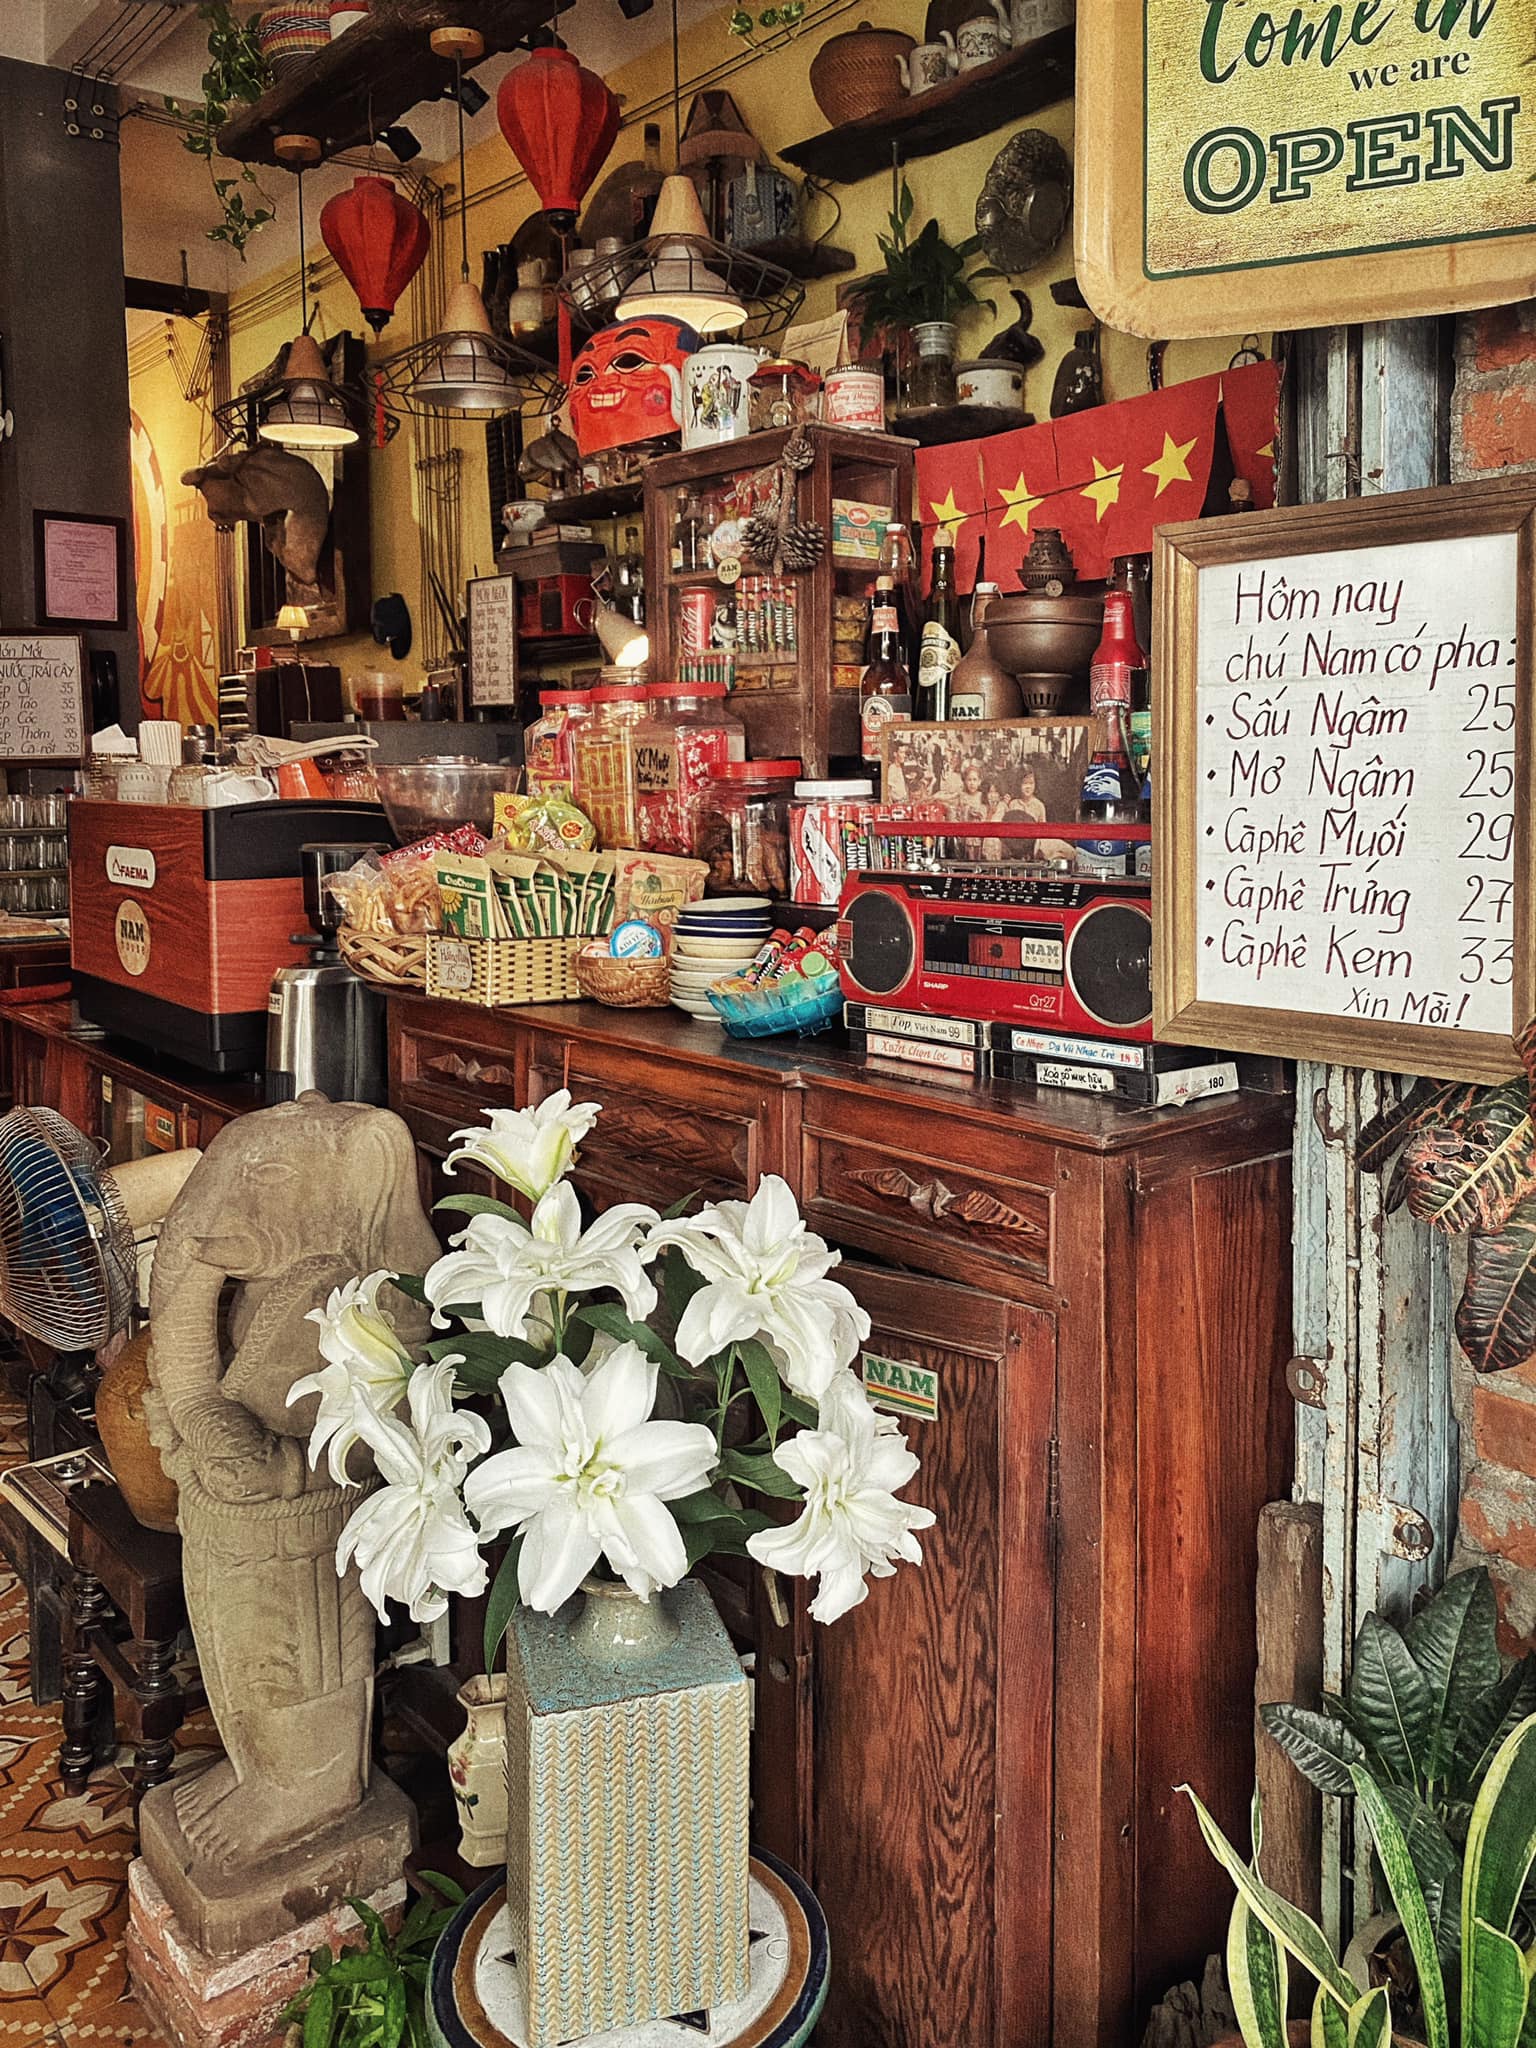 Quán cafe Đà Nẵng: Một chiếc ly cafe nóng hay một ly sinh tố mát lạnh tại quán cafe ở Đà Nẵng sẽ khiến bạn cảm thấy thư giãn và tận hưởng không khí nghỉ ngơi. Với thiết kế hiện đại và phong cách riêng, quán cafe ở Đà Nẵng sẽ mang đến cho bạn những trải nghiệm tuyệt vời.